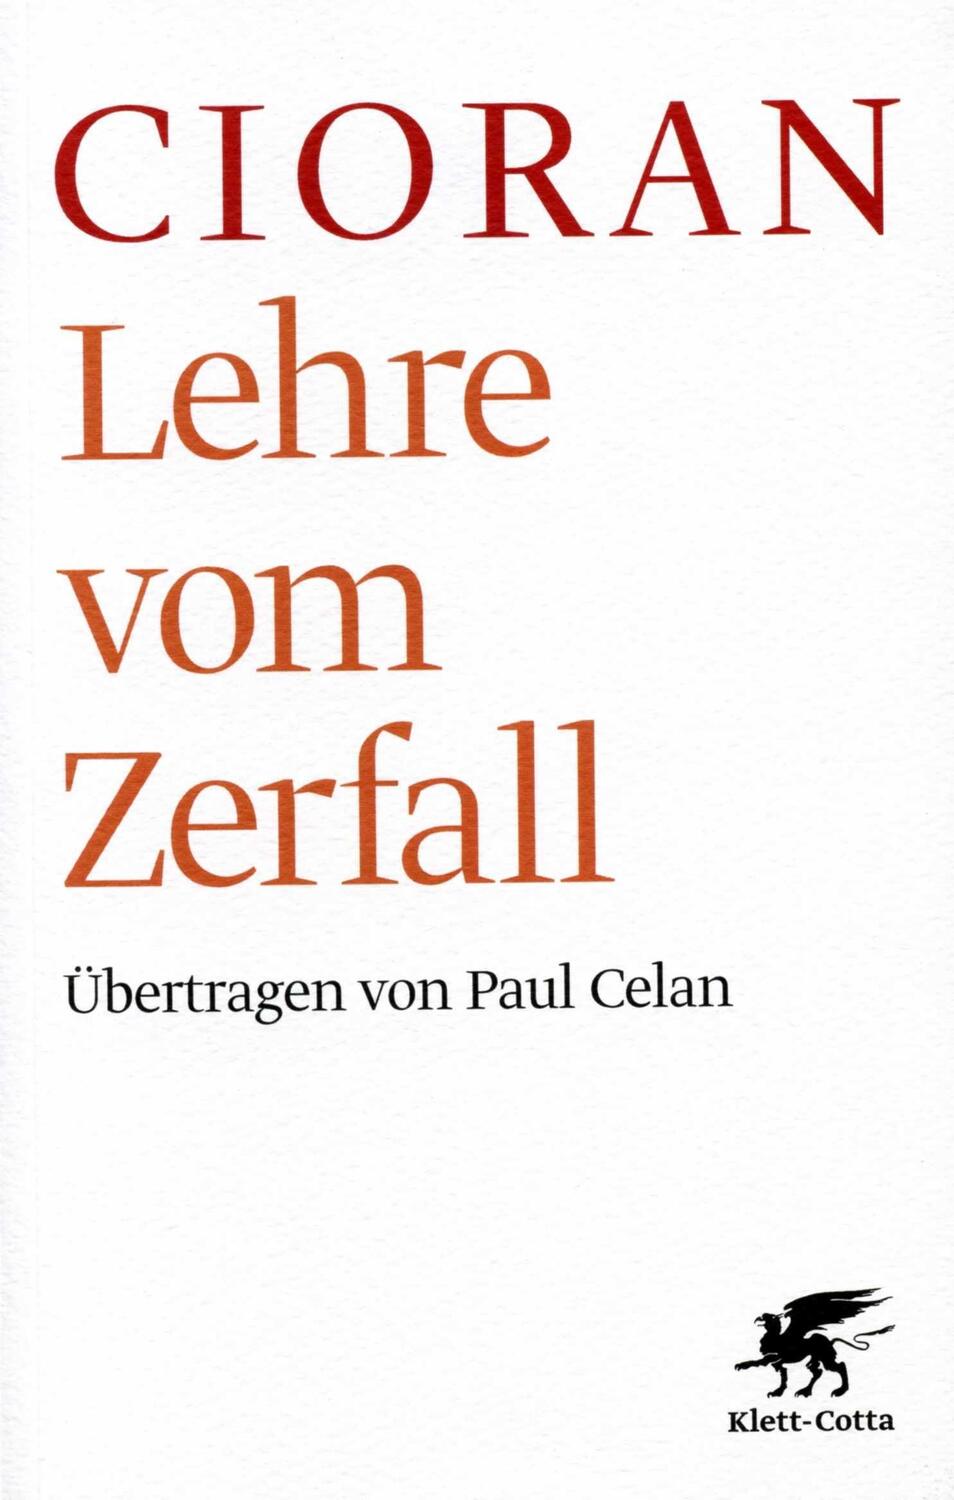 Lehre vom Zerfall - Cioran, Emile M